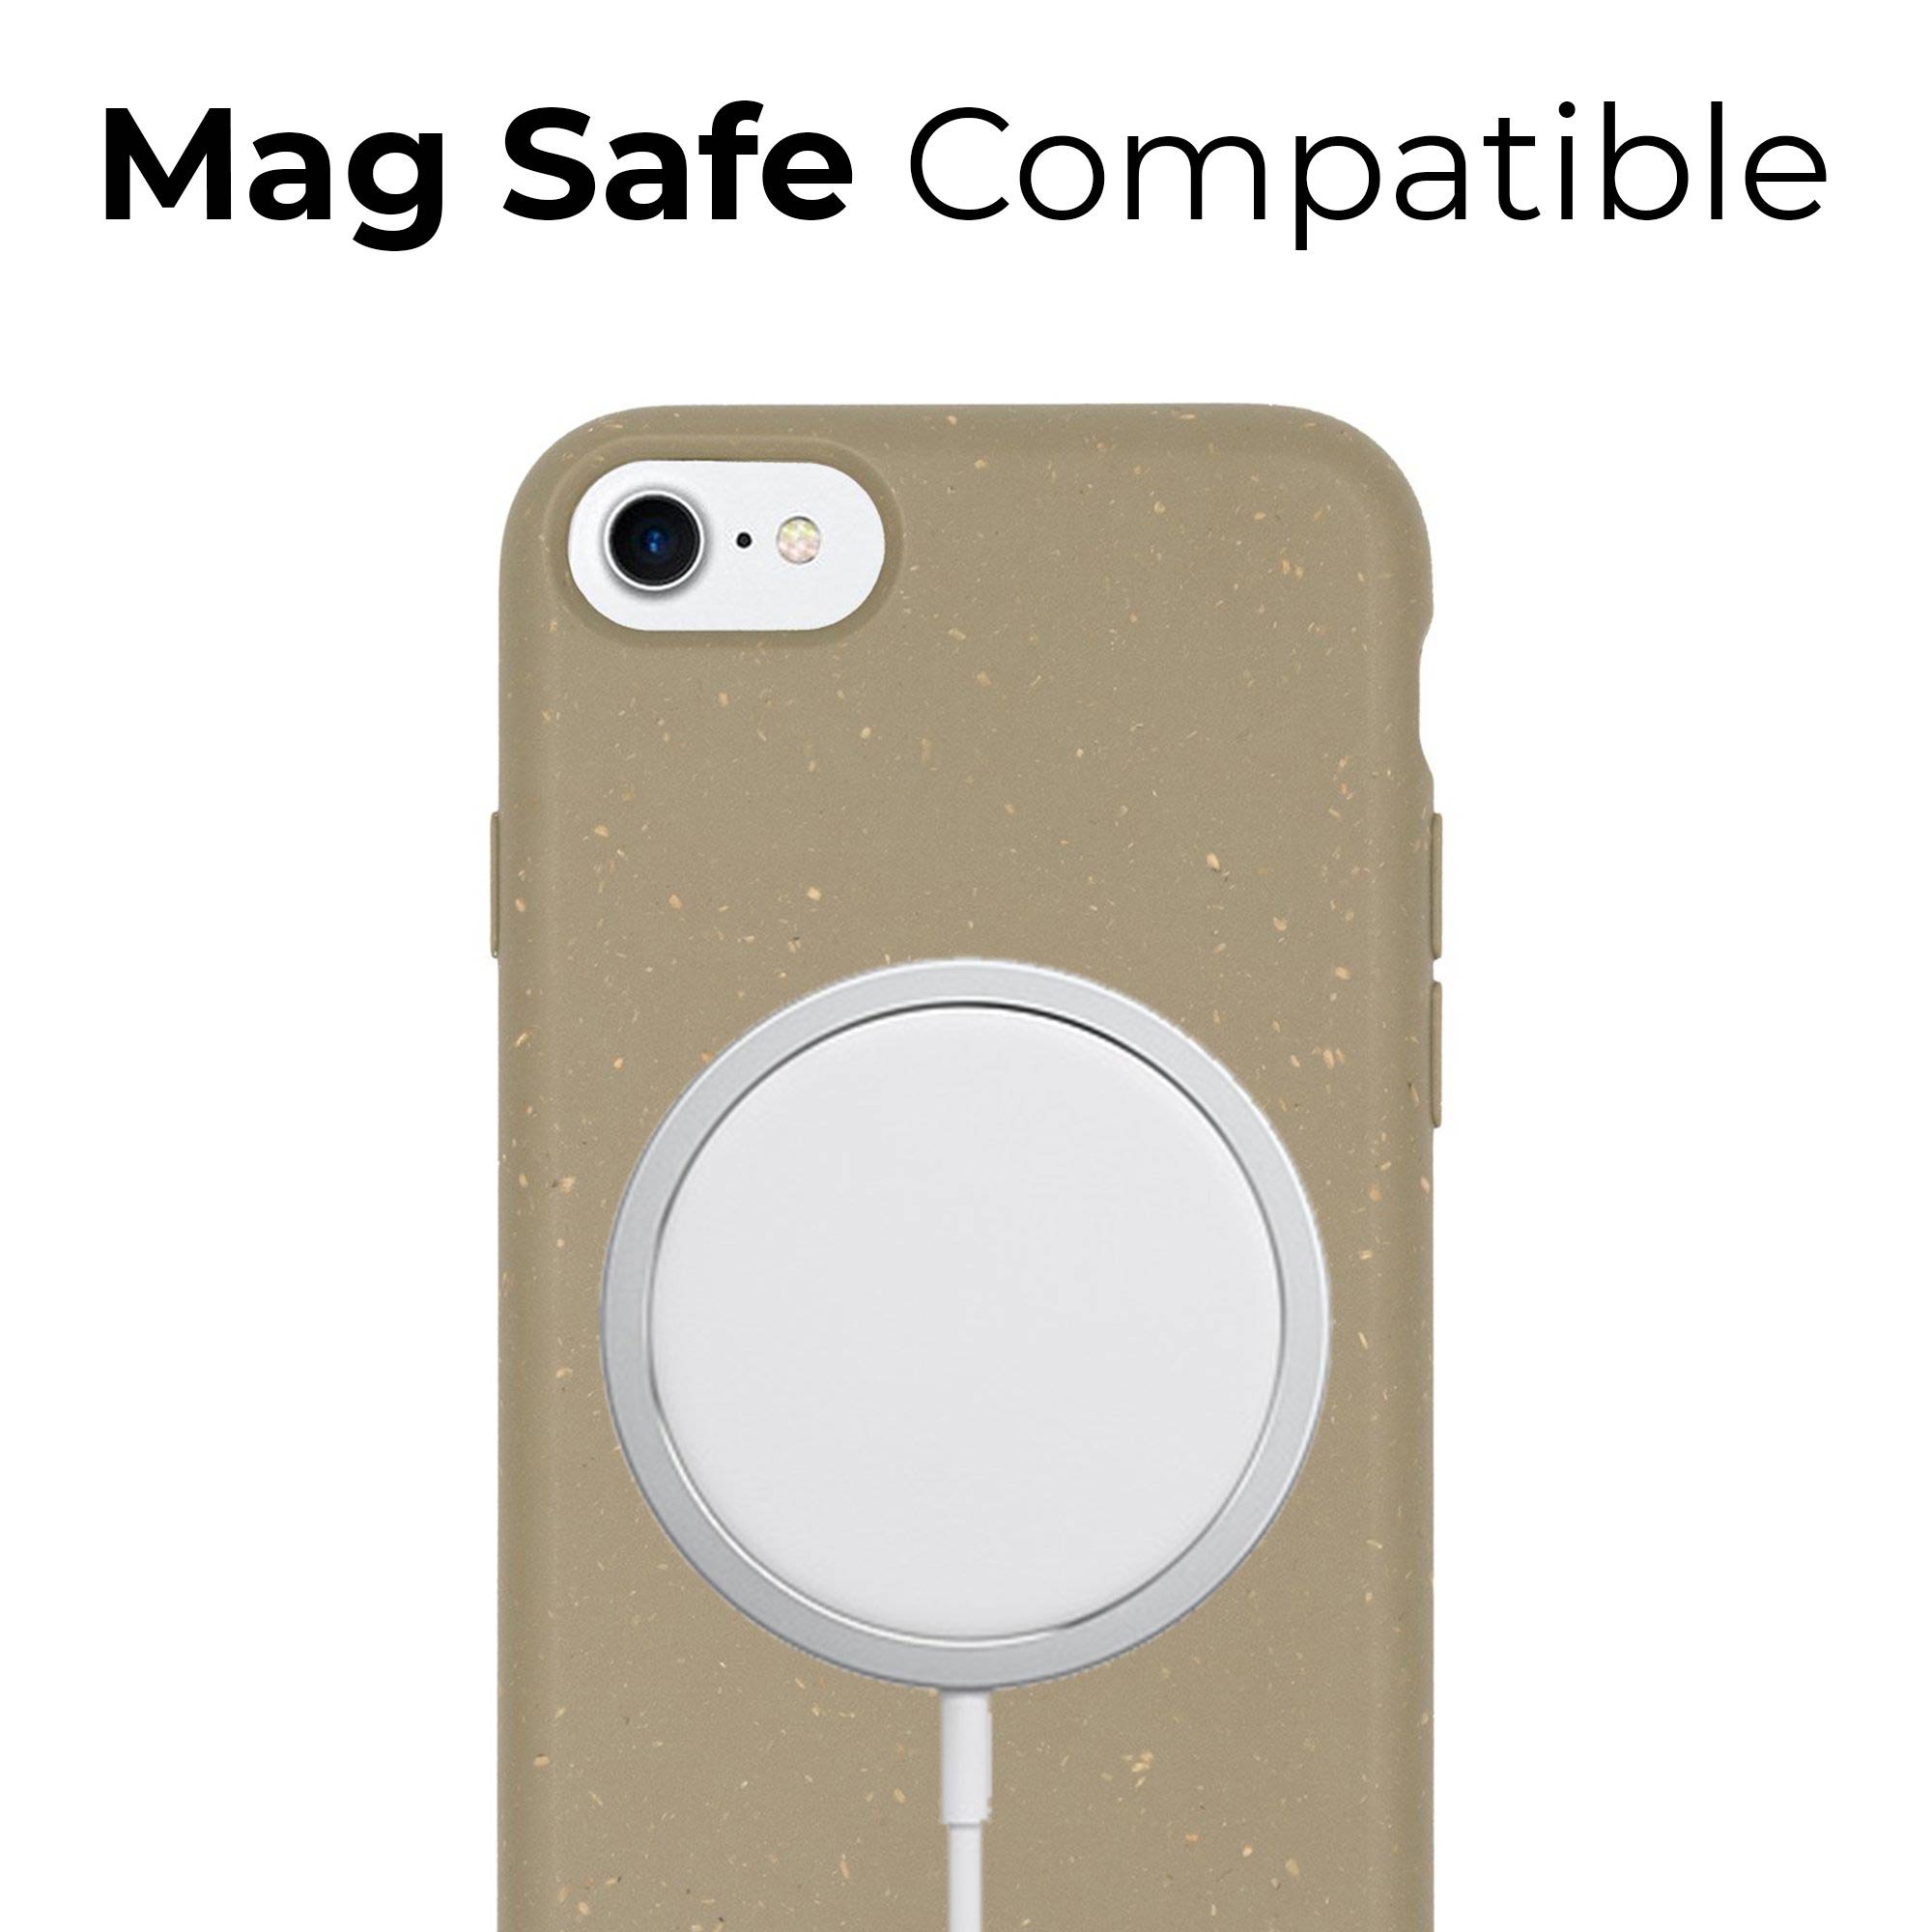 Mag caja de teléfono compatible con carga inalámbrica y segura